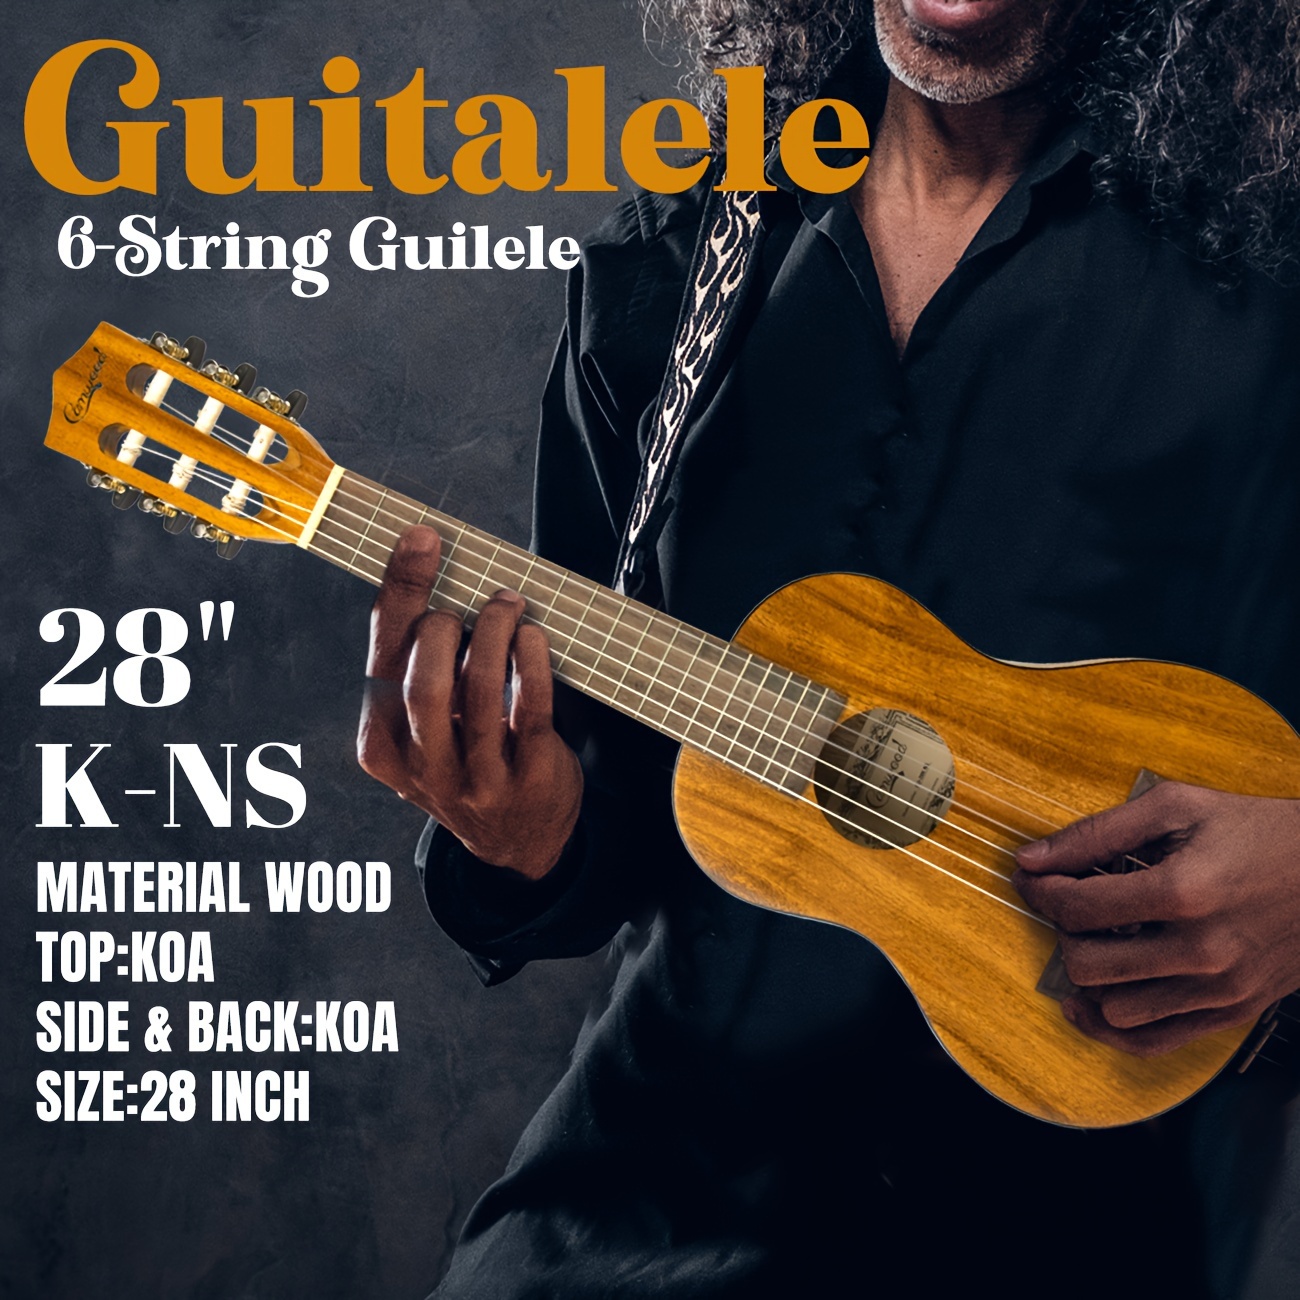 Support pour la guitare classique, la guitare flamenco et la guitare  acoustique